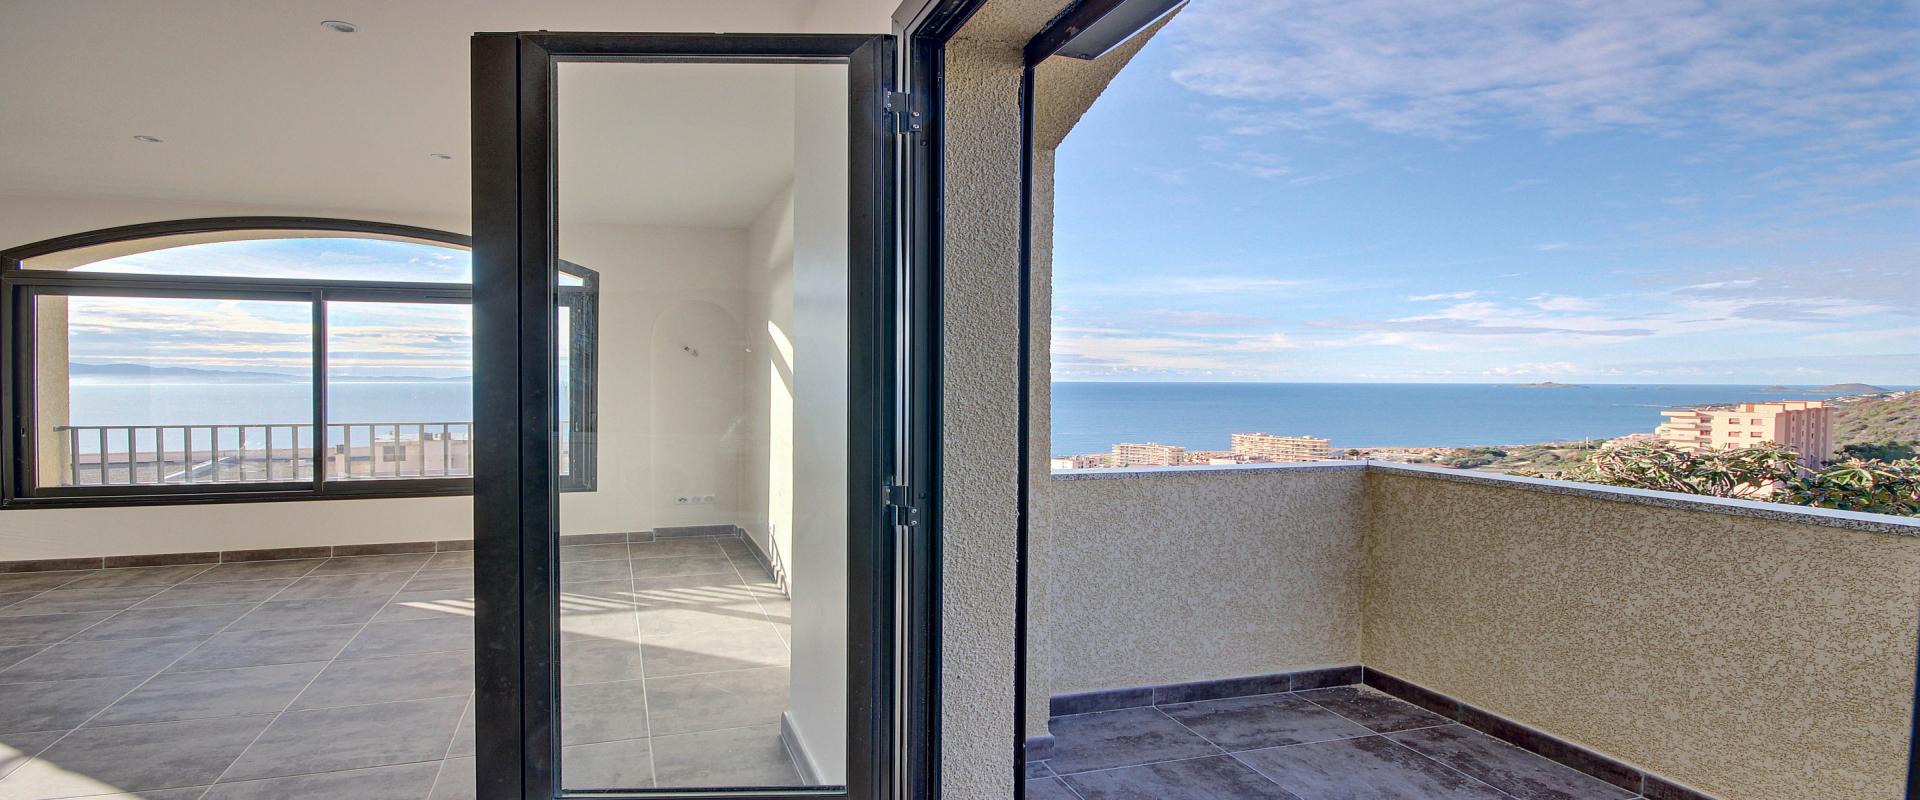 En Corse, à Ajaccio, Route des Sanguinaires, Vente d'un appartement F3 de 63 m² avec terrasse et vue mer